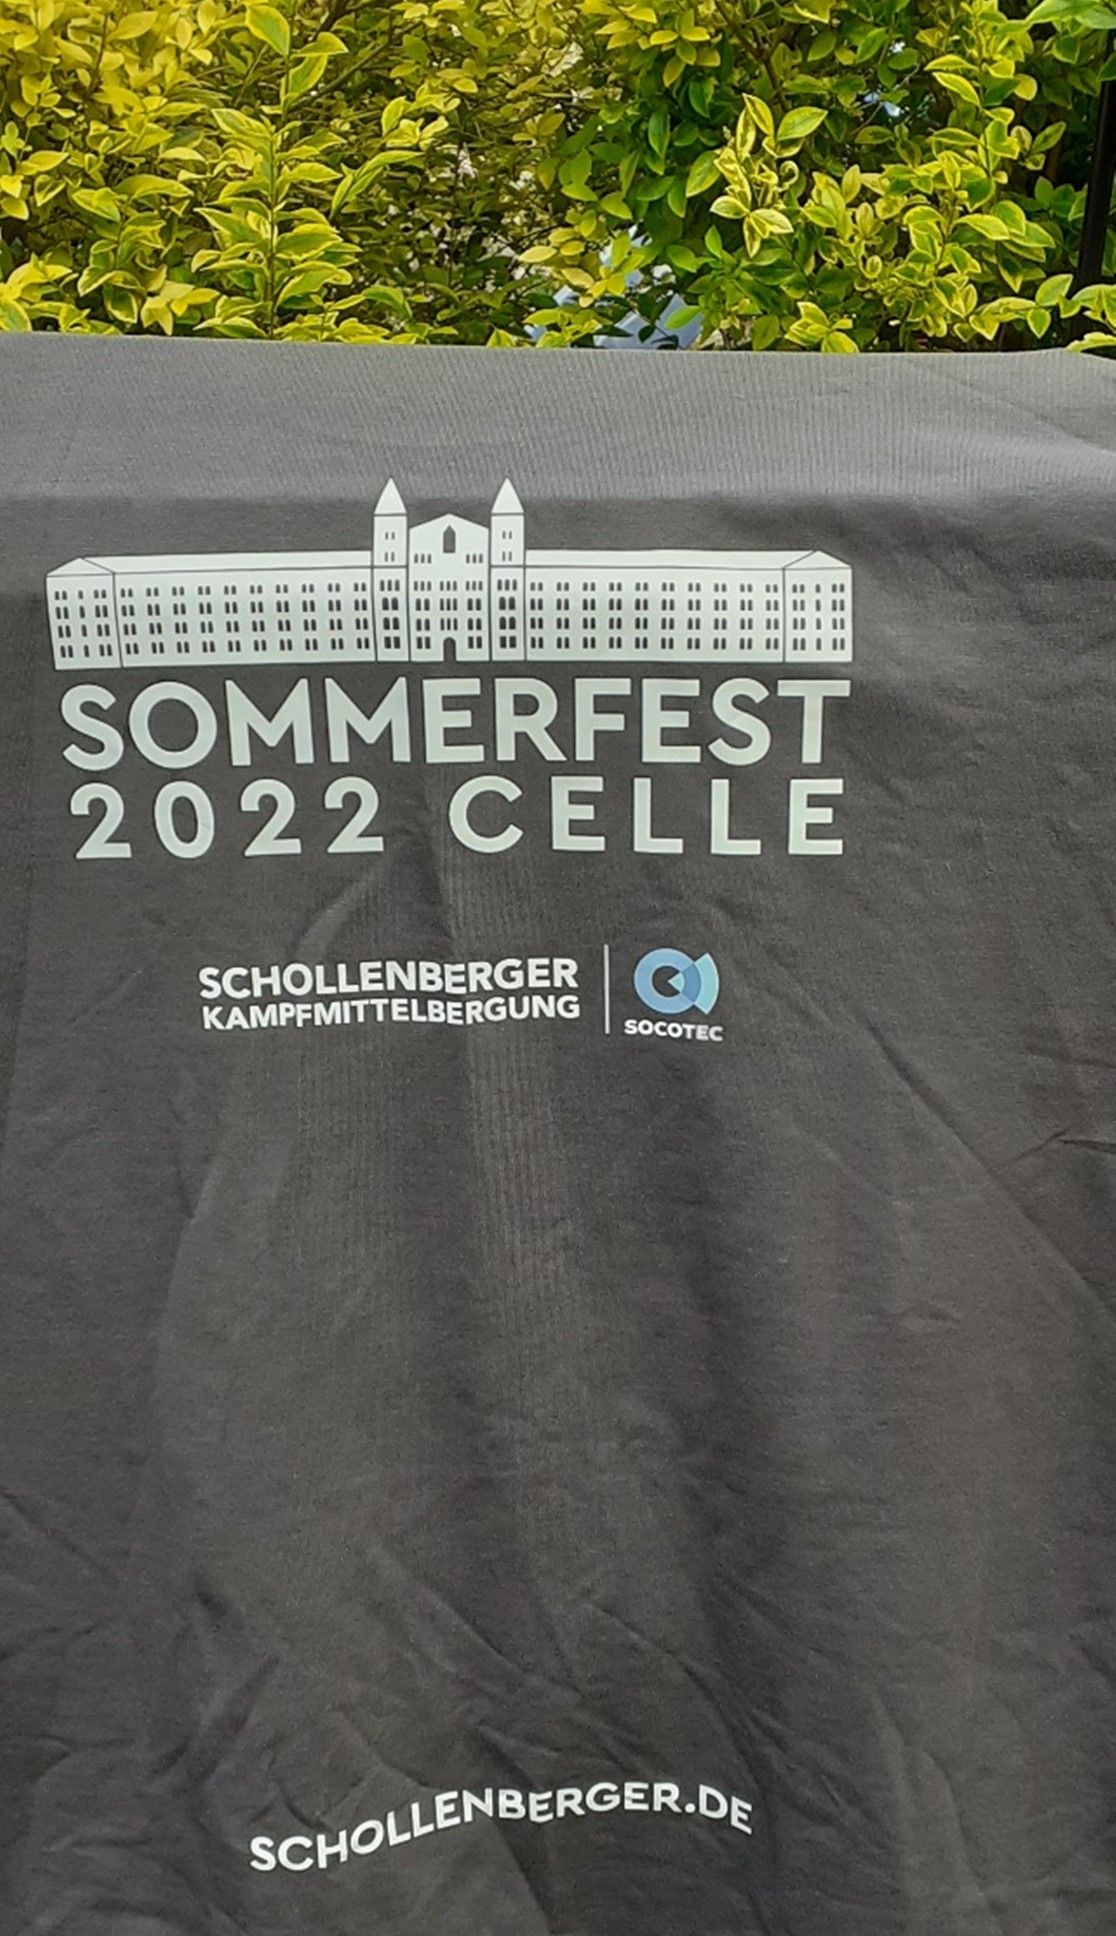 Schollenberger